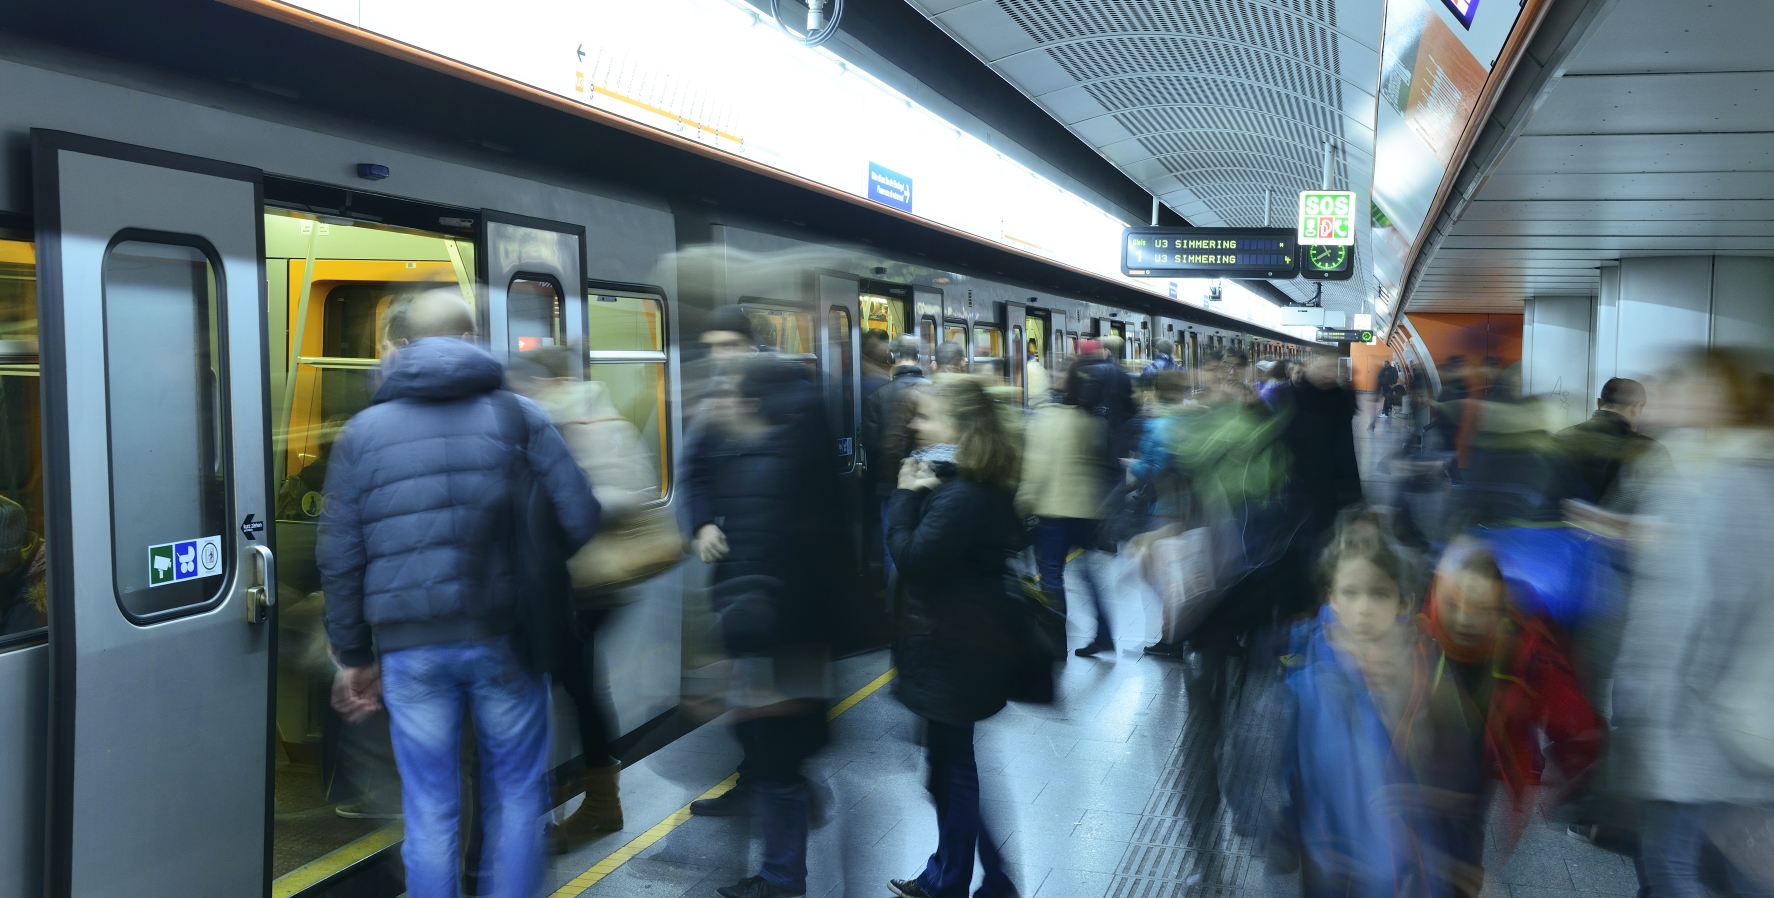 Viele Tausend Fahrgäste nutzen täglich die Wiener Linien, in diesem Bild die U-Bahn der Station Westbahnhof.